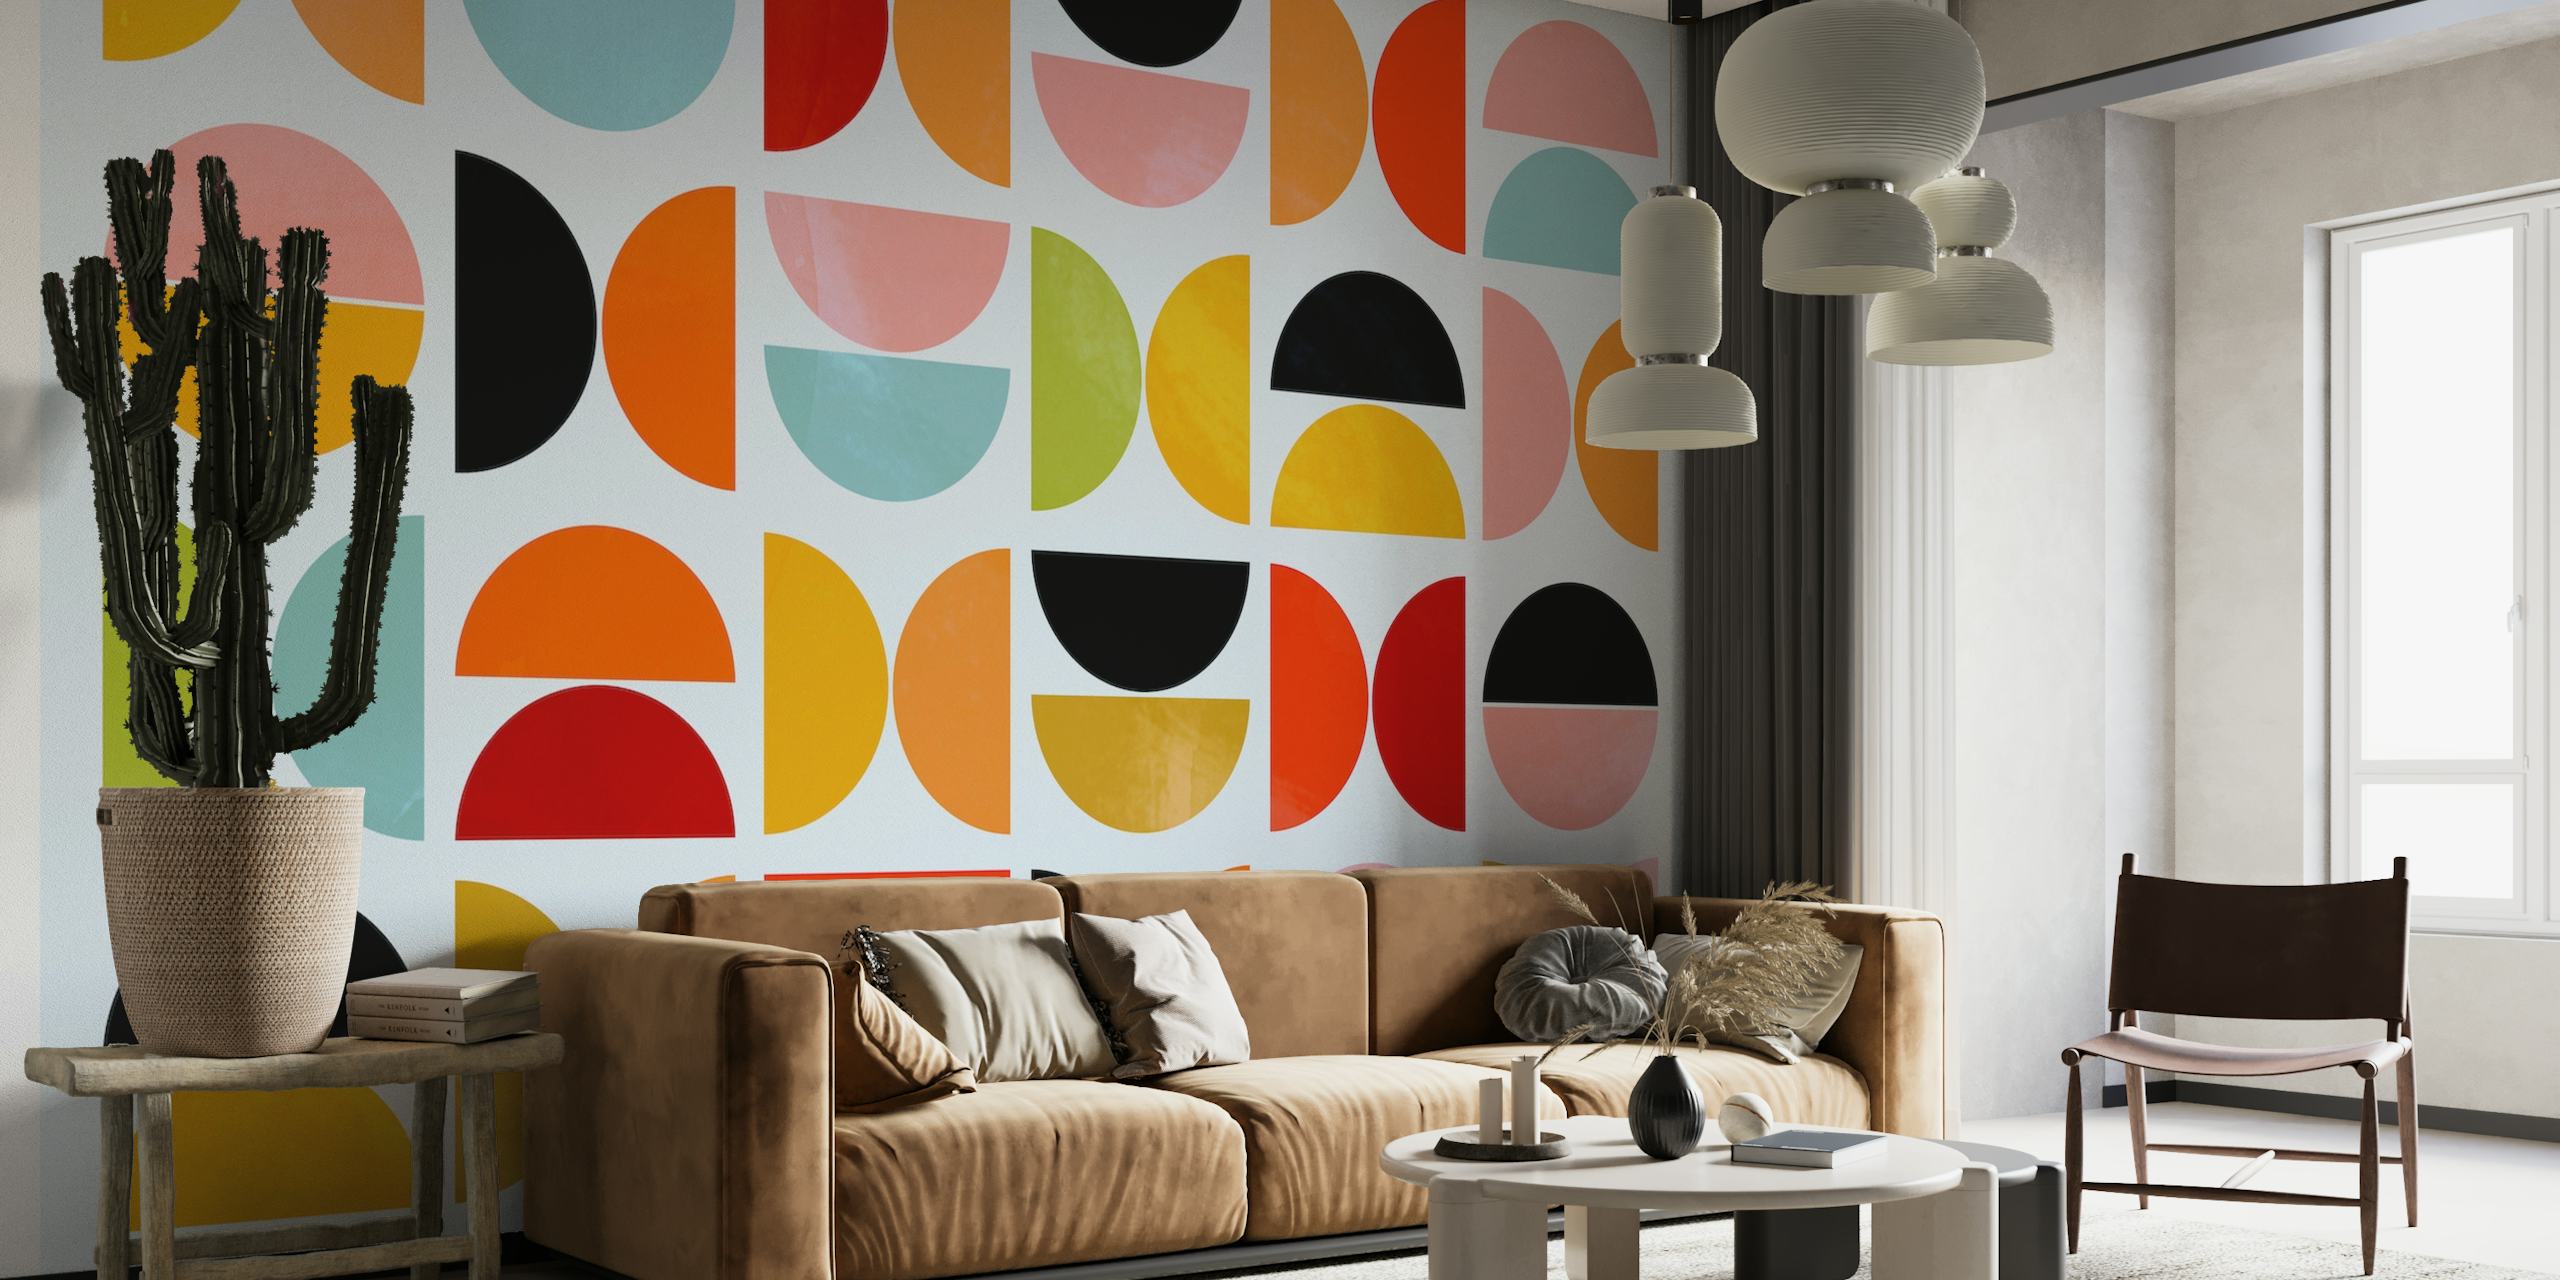 Formas geométricas vívidas em um design mural de parede inspirado na Bauhaus.